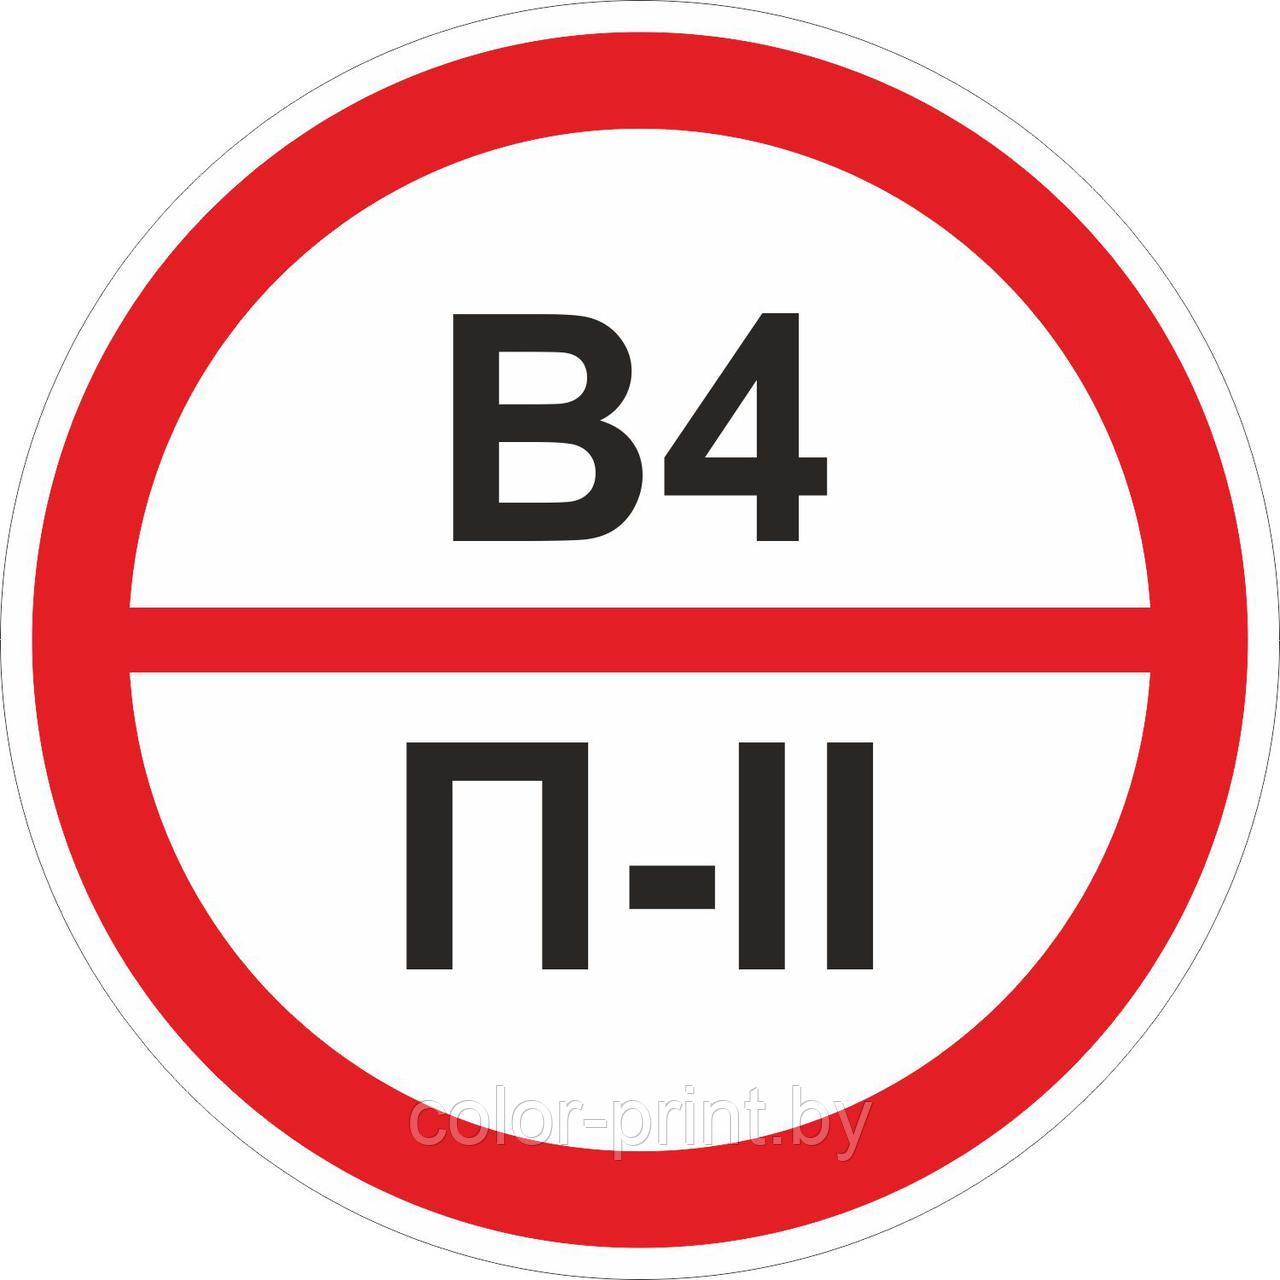 Наклейка ПВХ "Категорийности помещений В4/П-II"